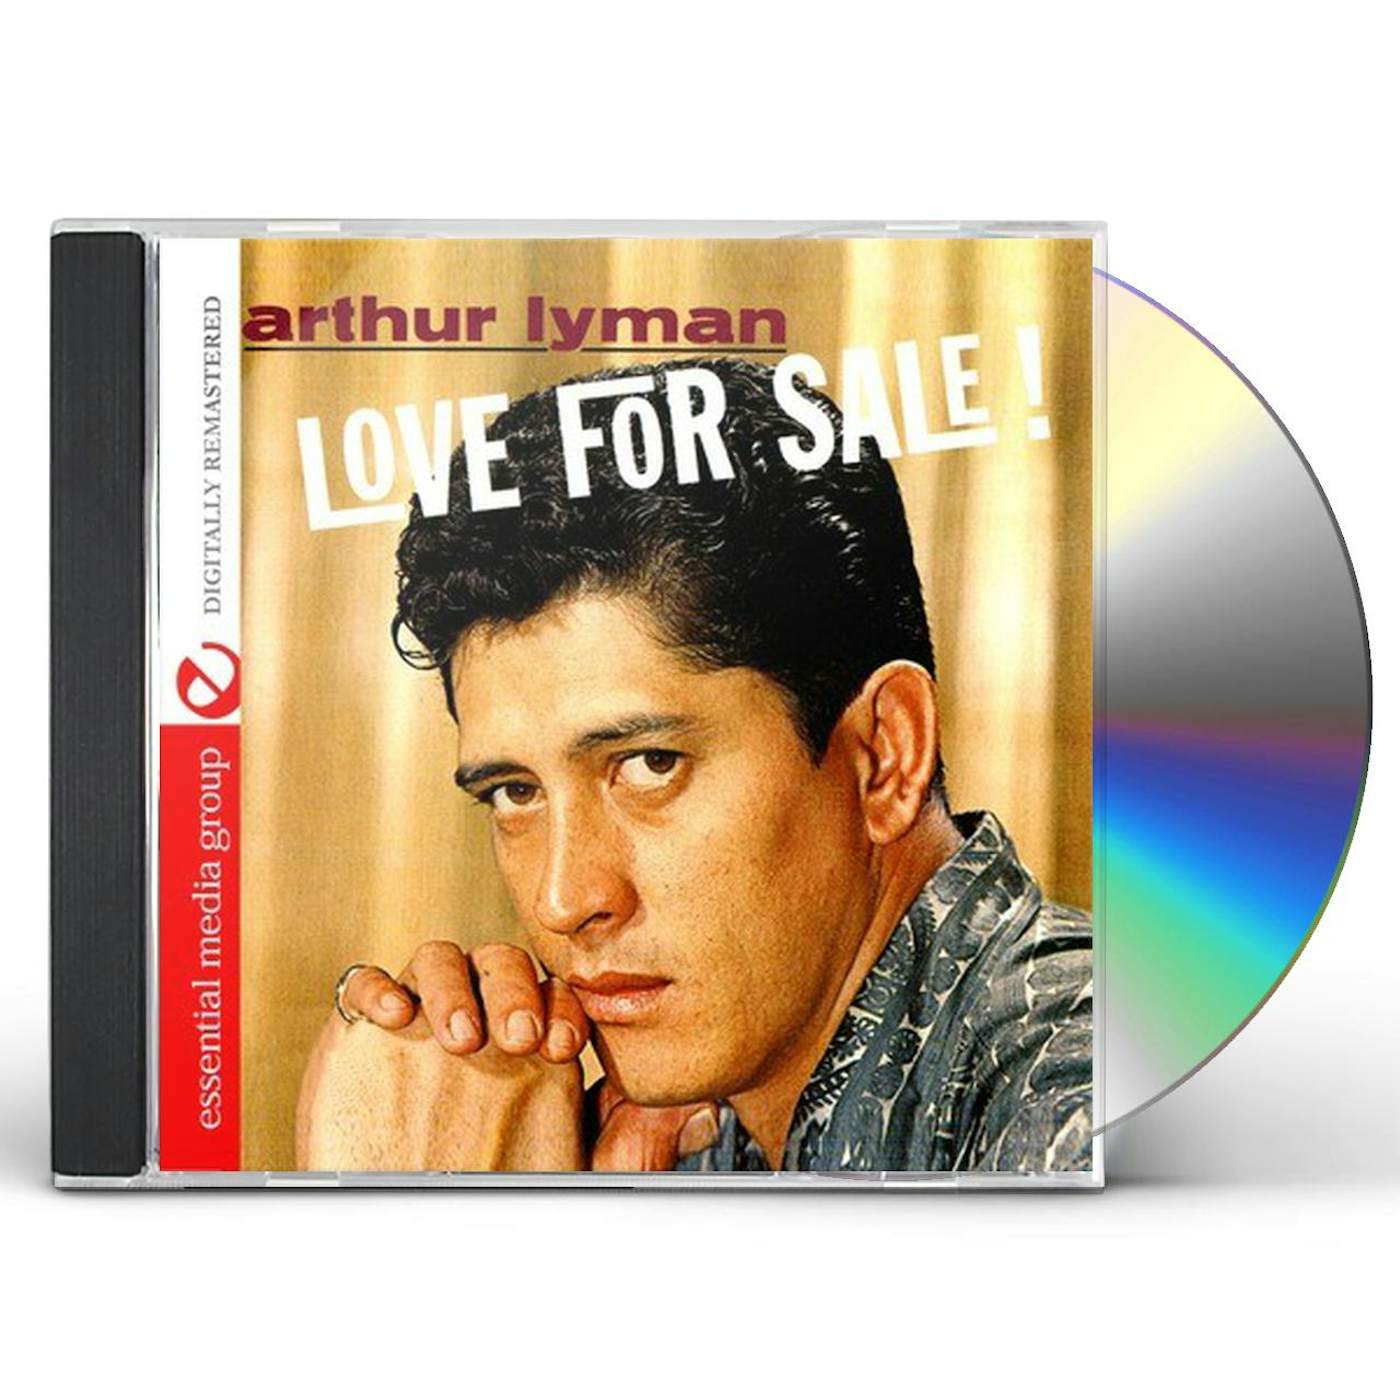 Arthur Lyman LOVE FOR SALE CD